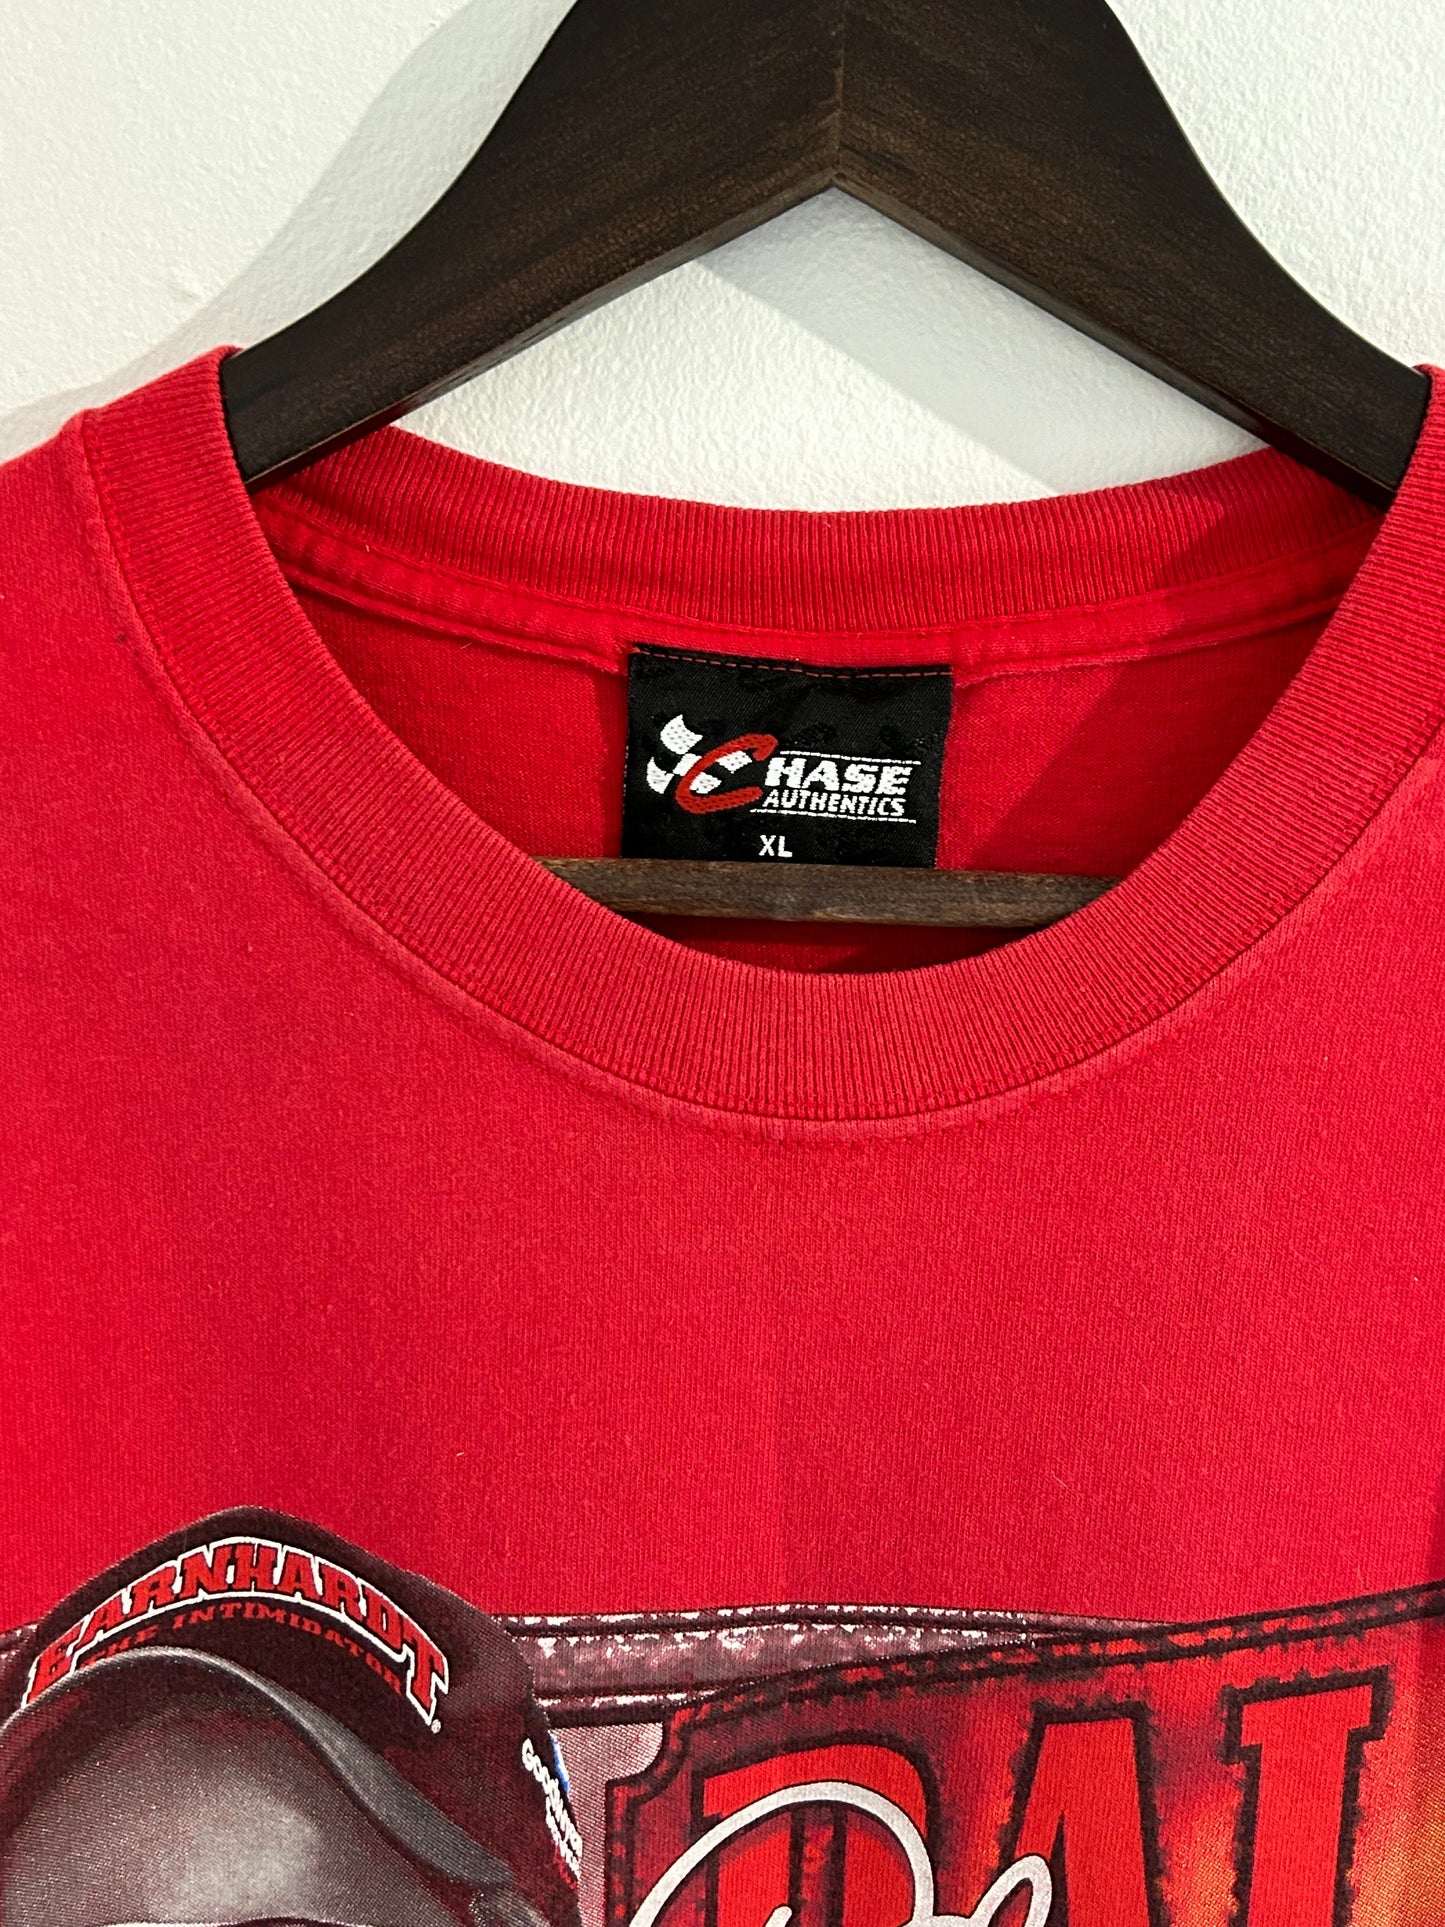 Vintage NASCAR Dale Earnhardt Red Earnhardt Express T-Shirt